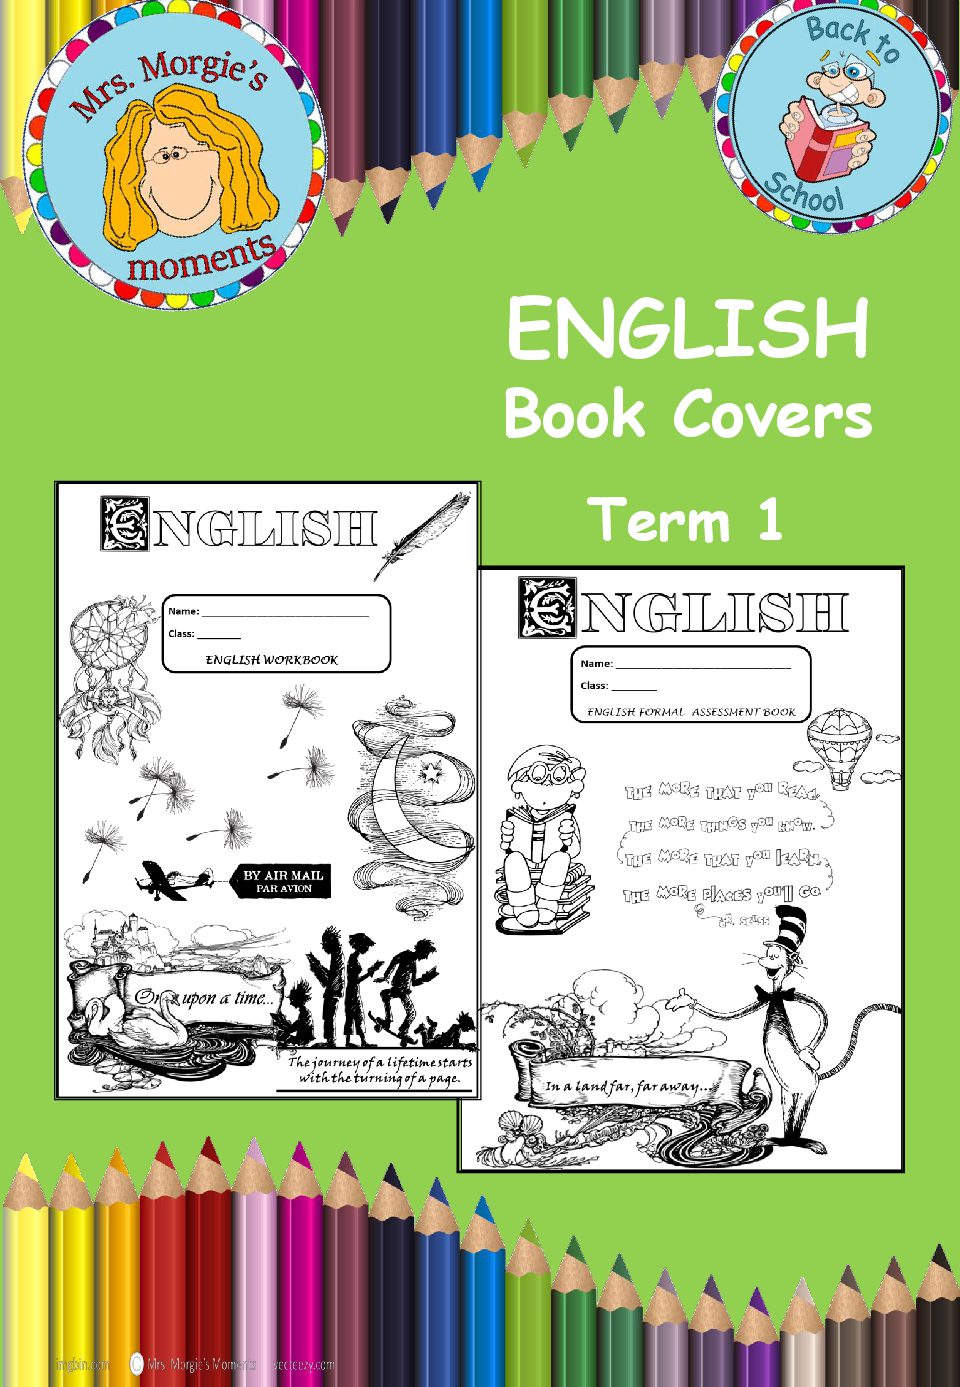 English covers cover • Teacha